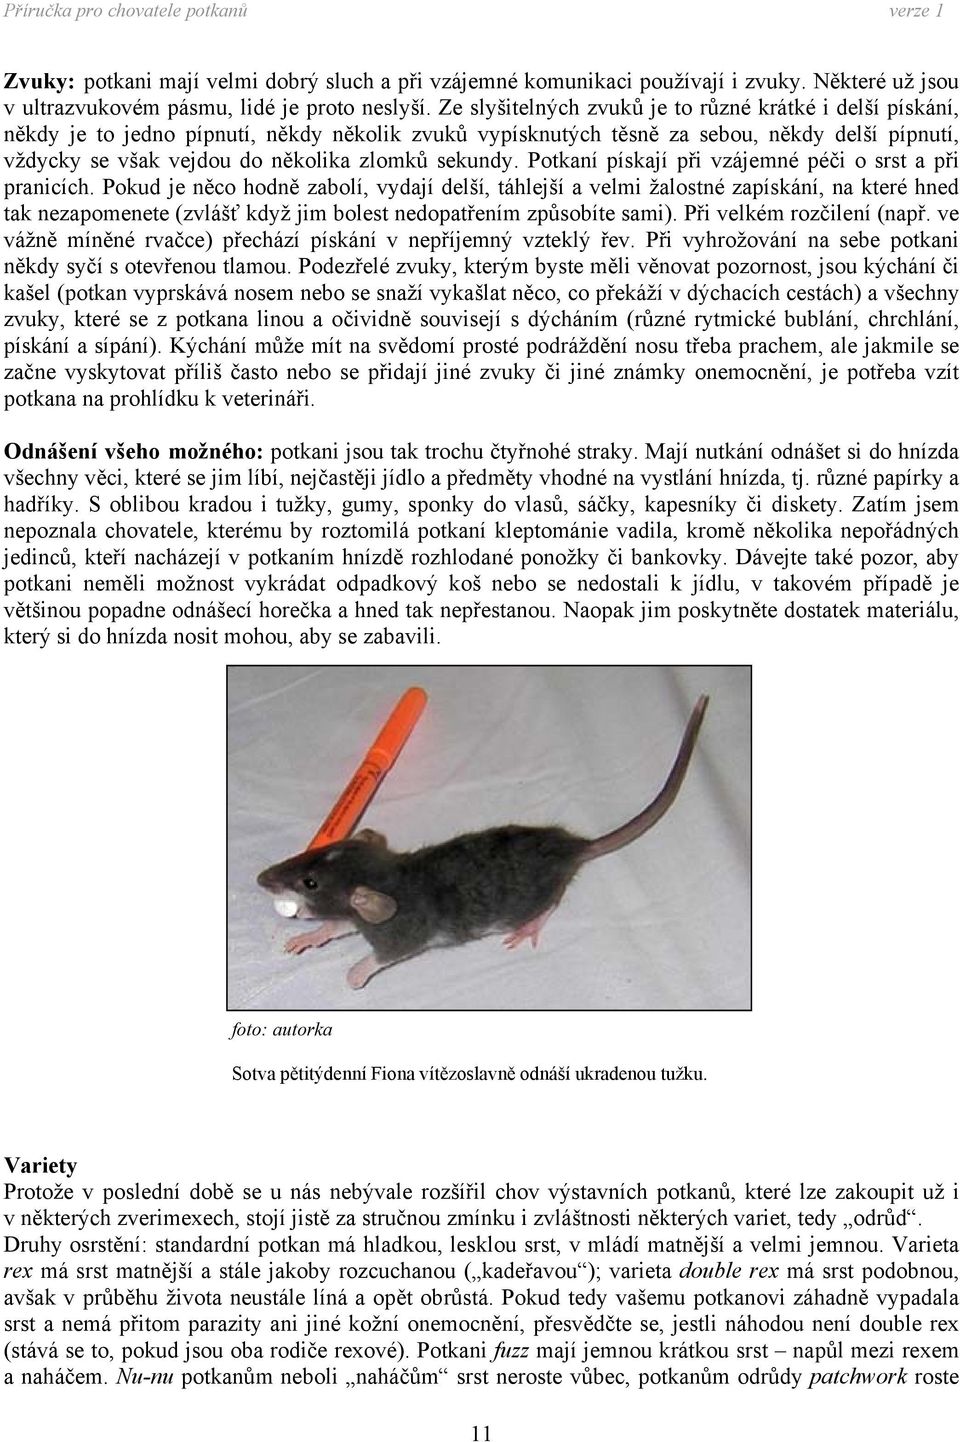 sekundy. Potkaní pískají při vzájemné péči o srst a při pranicích.